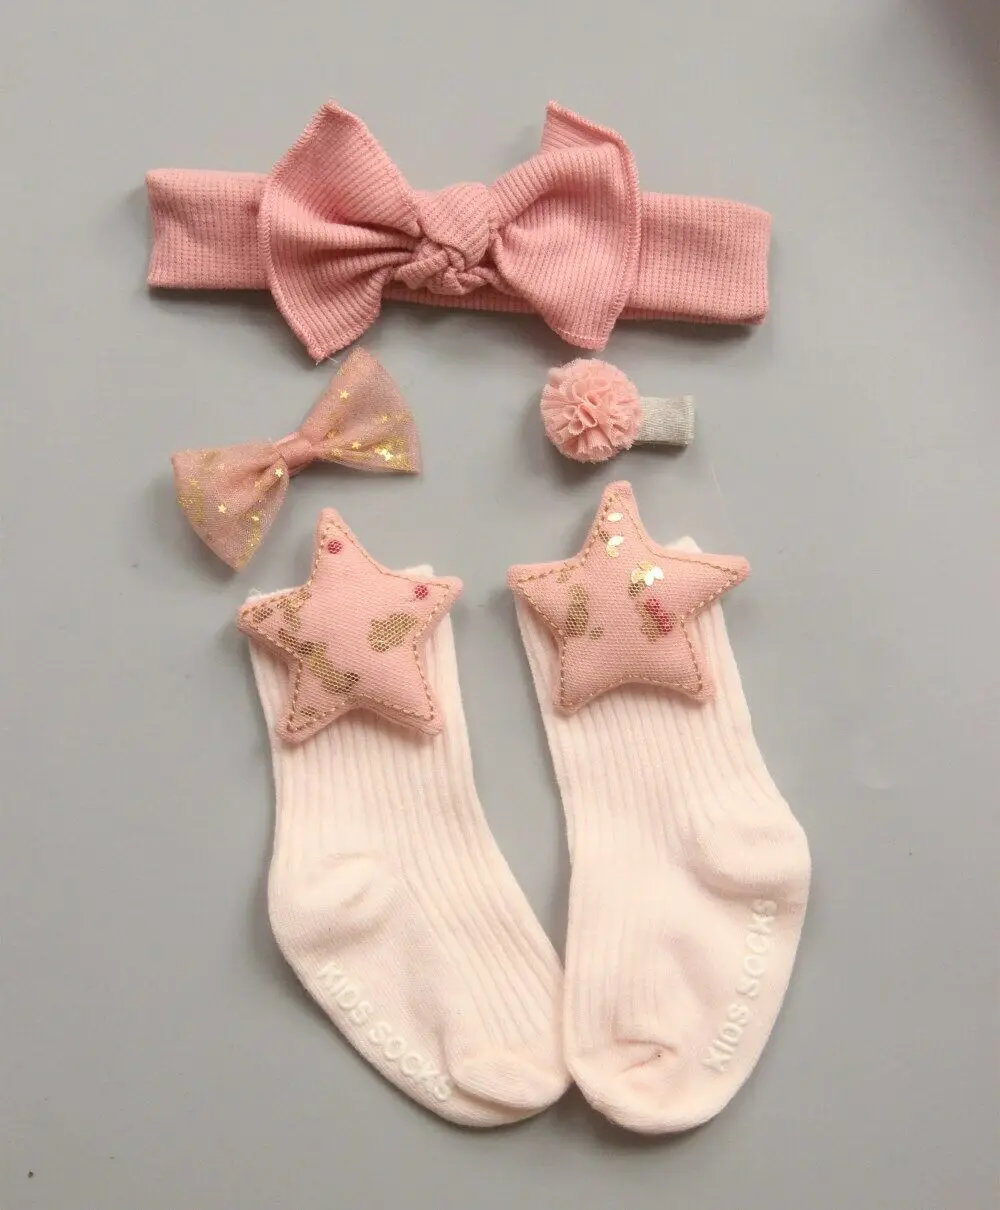 4 шт./компл. милые носки для новорожденных девочек кружевные мягкие нескользящие носки принцессы с оборками и юбкой-пачкой на лодыжке обруч - Цвет: Зеленый